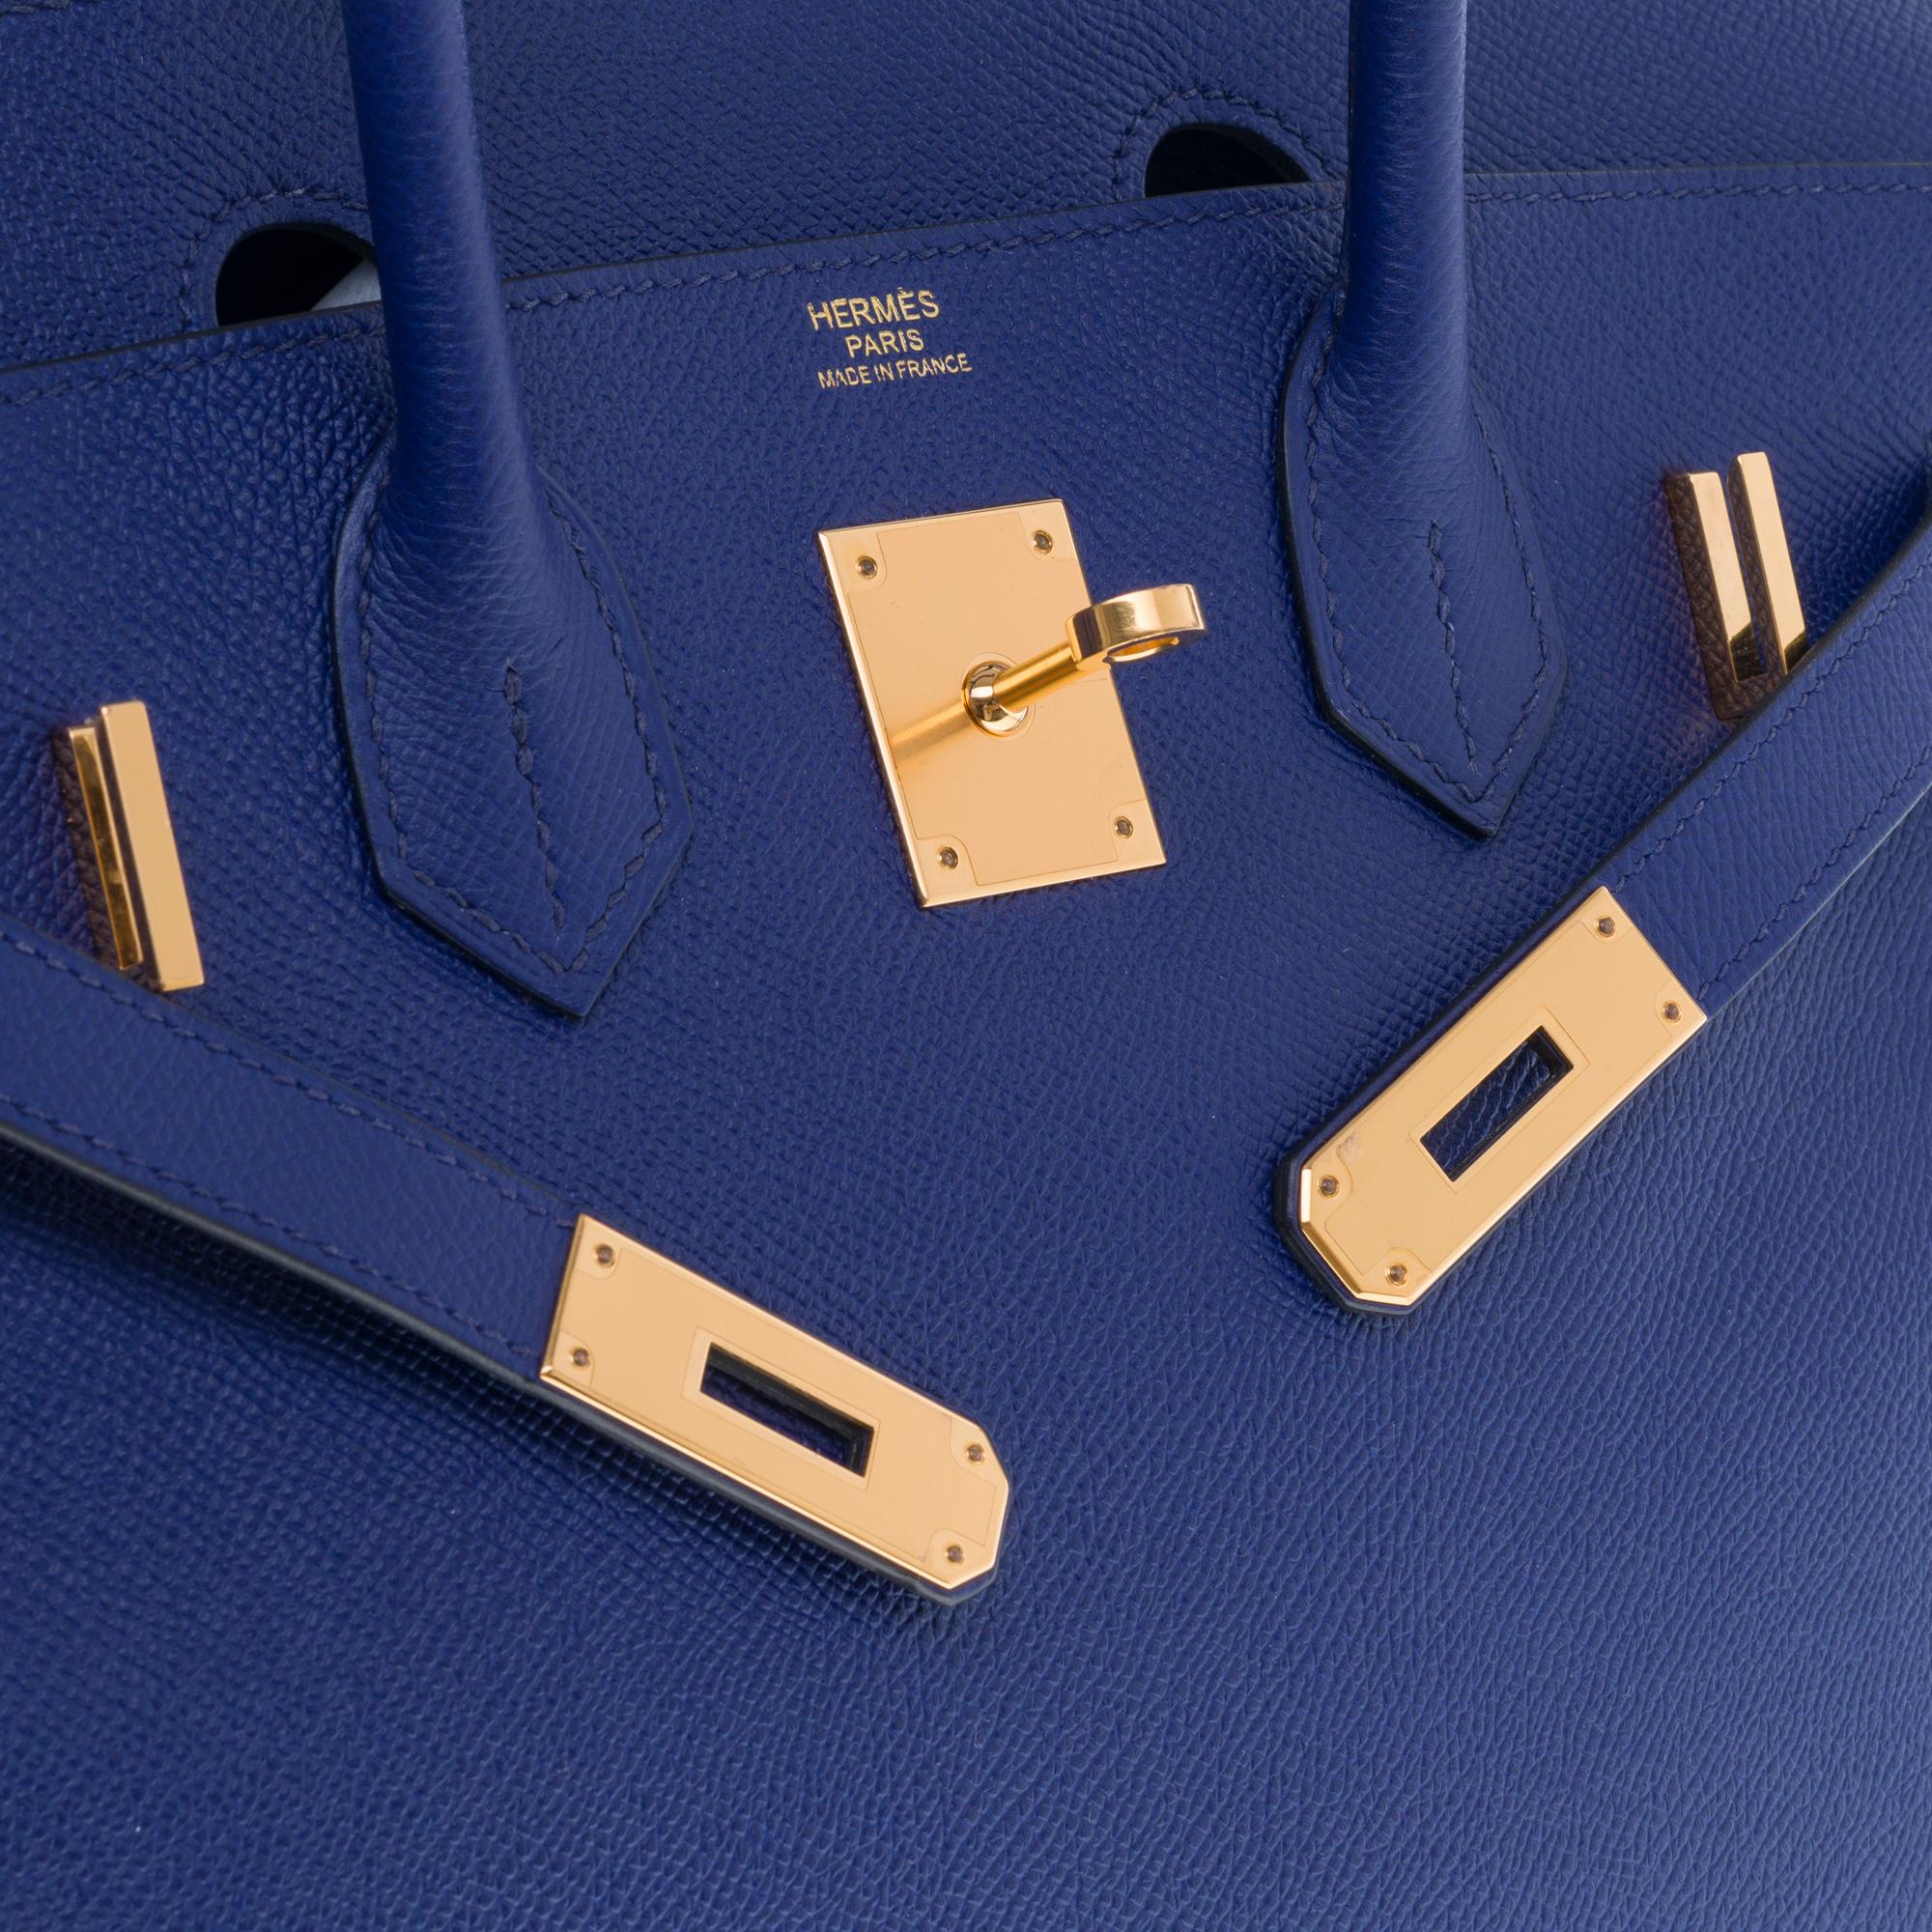 Almost New - Hermès Birkin 30 handbag in Blue Encre Epsom leather, gold hardware 1